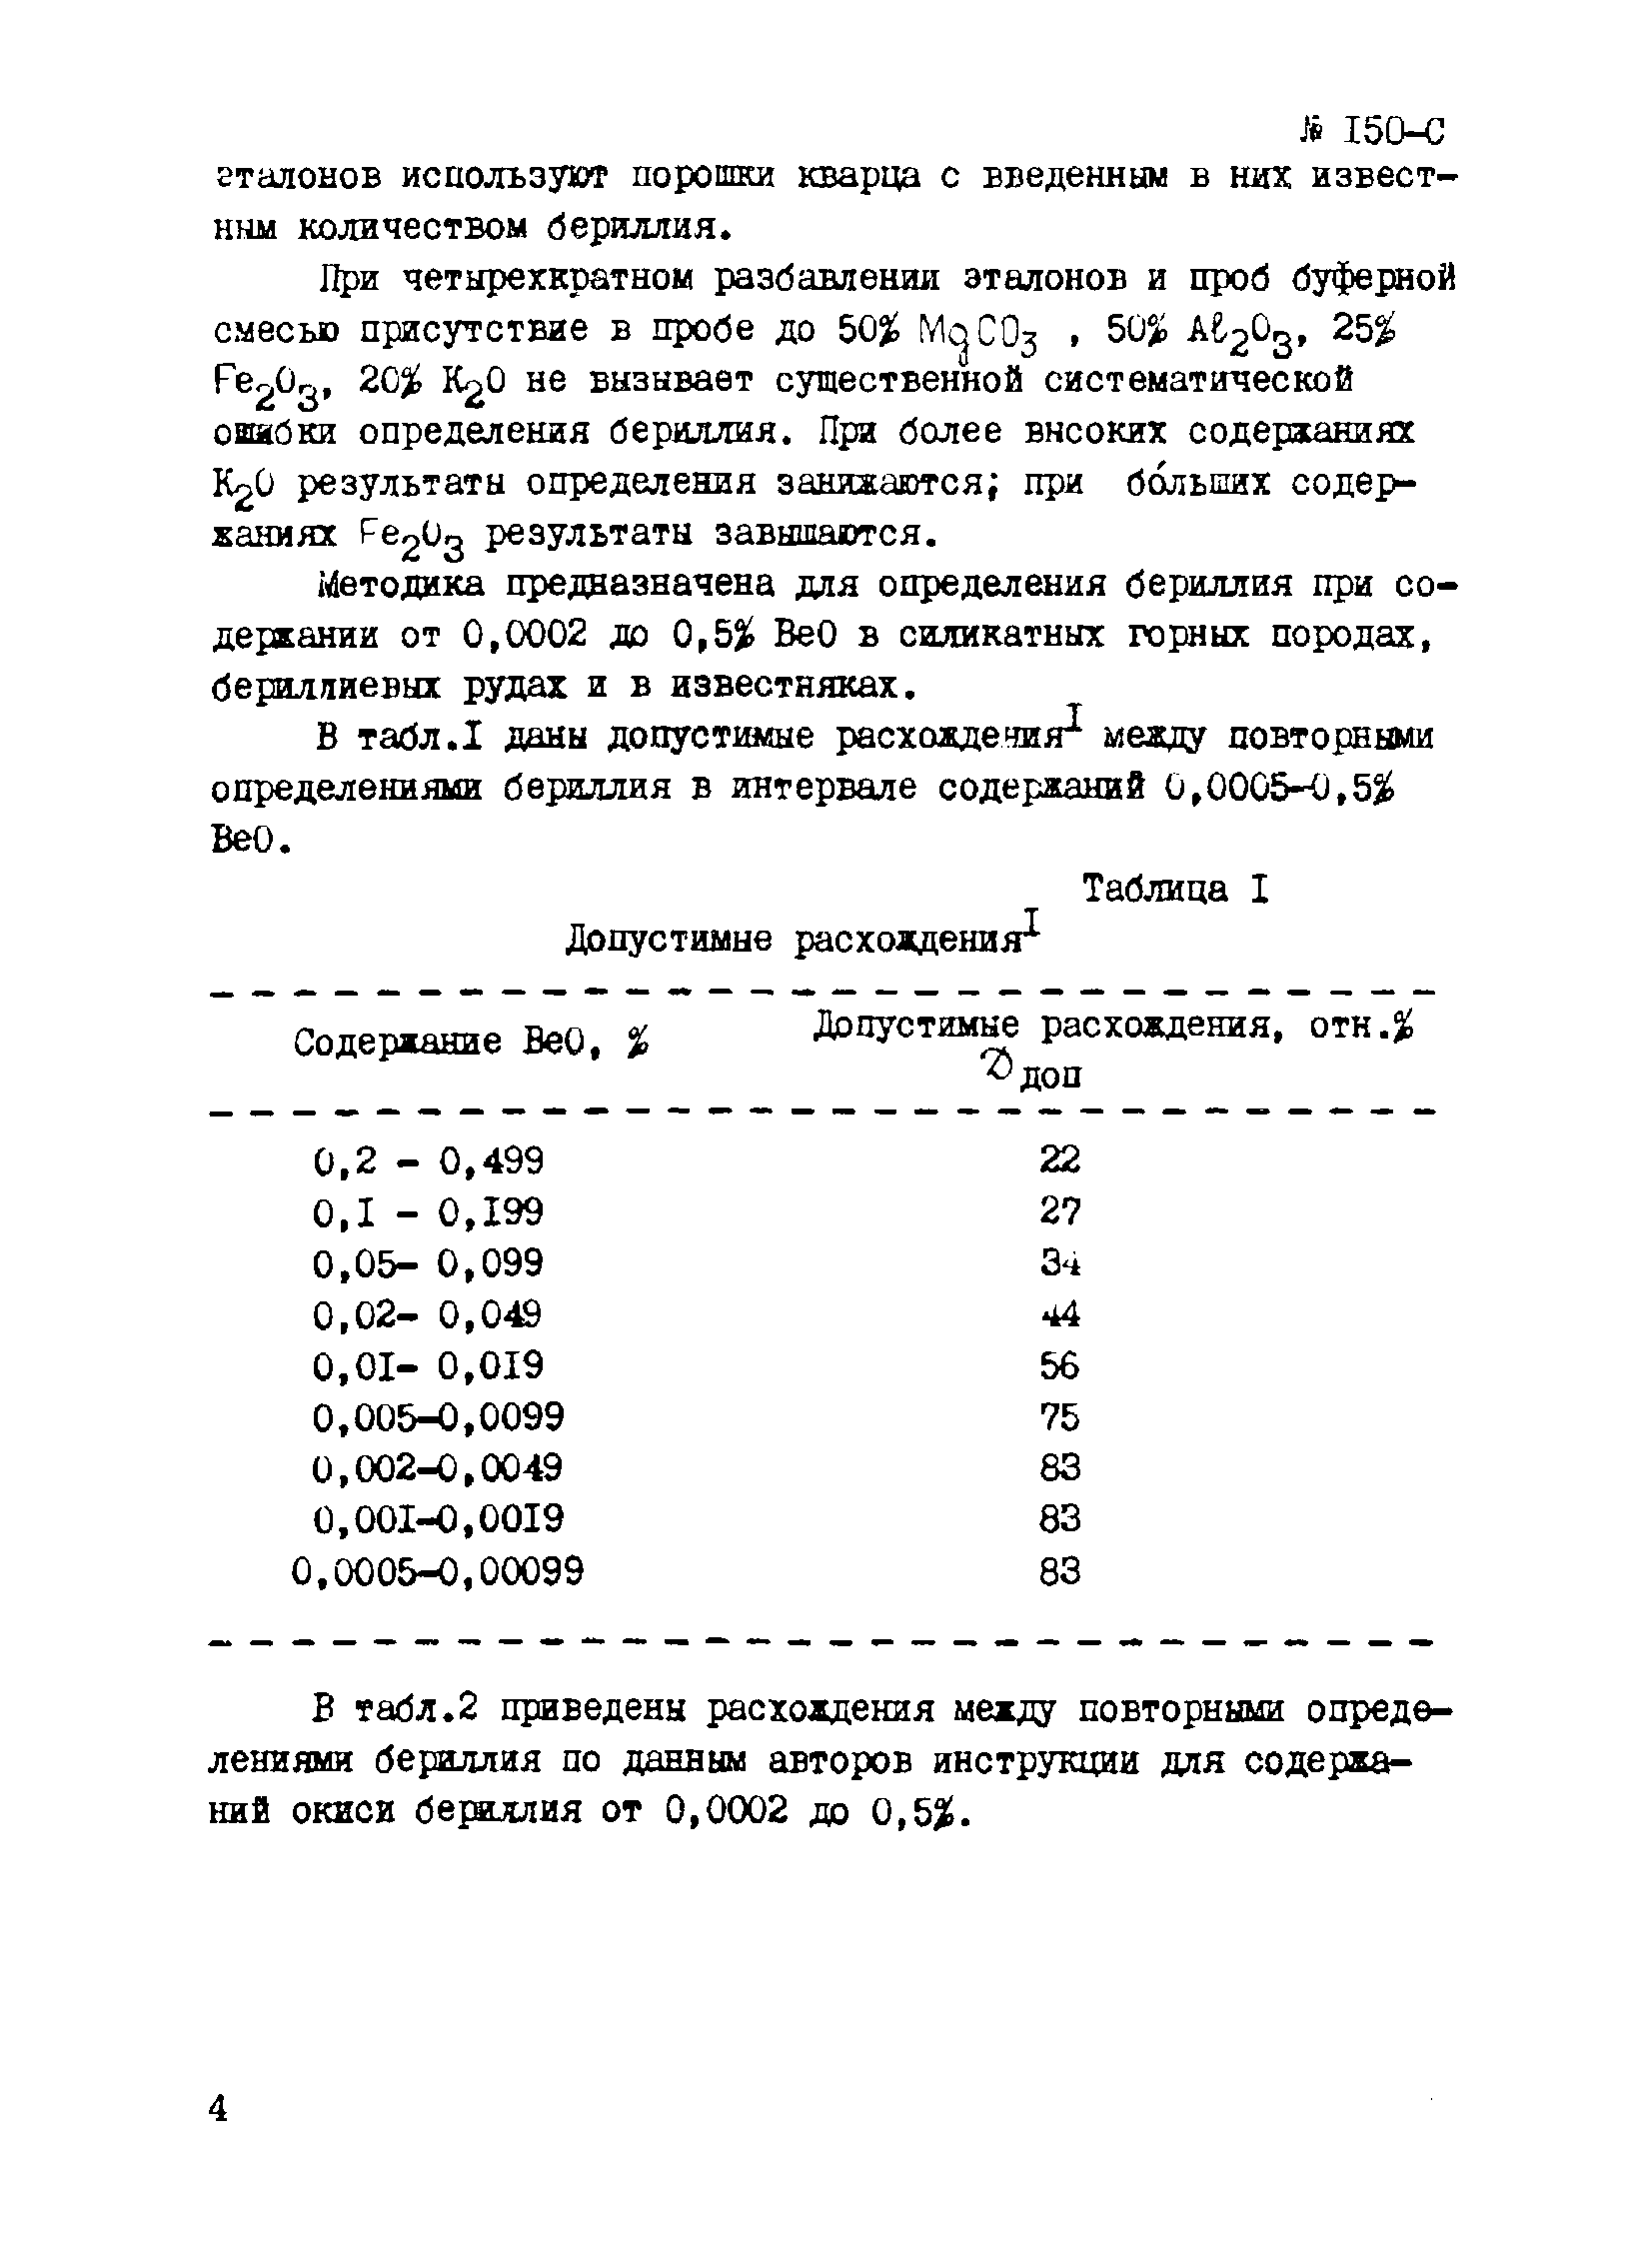 Инструкция НСАМ 150-С